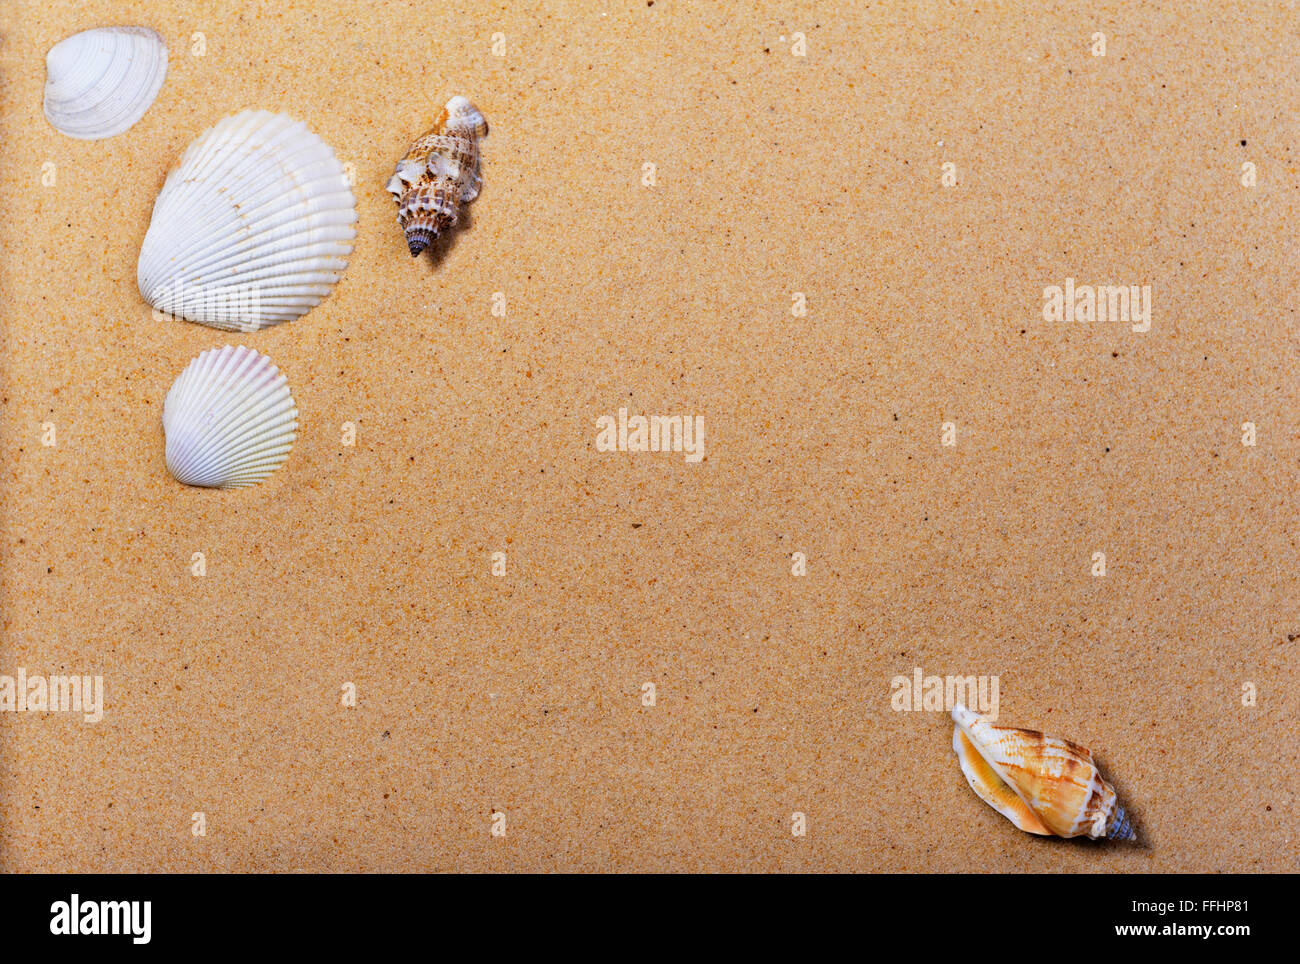 Conchas de Mar en una playa de arena. Foto de stock